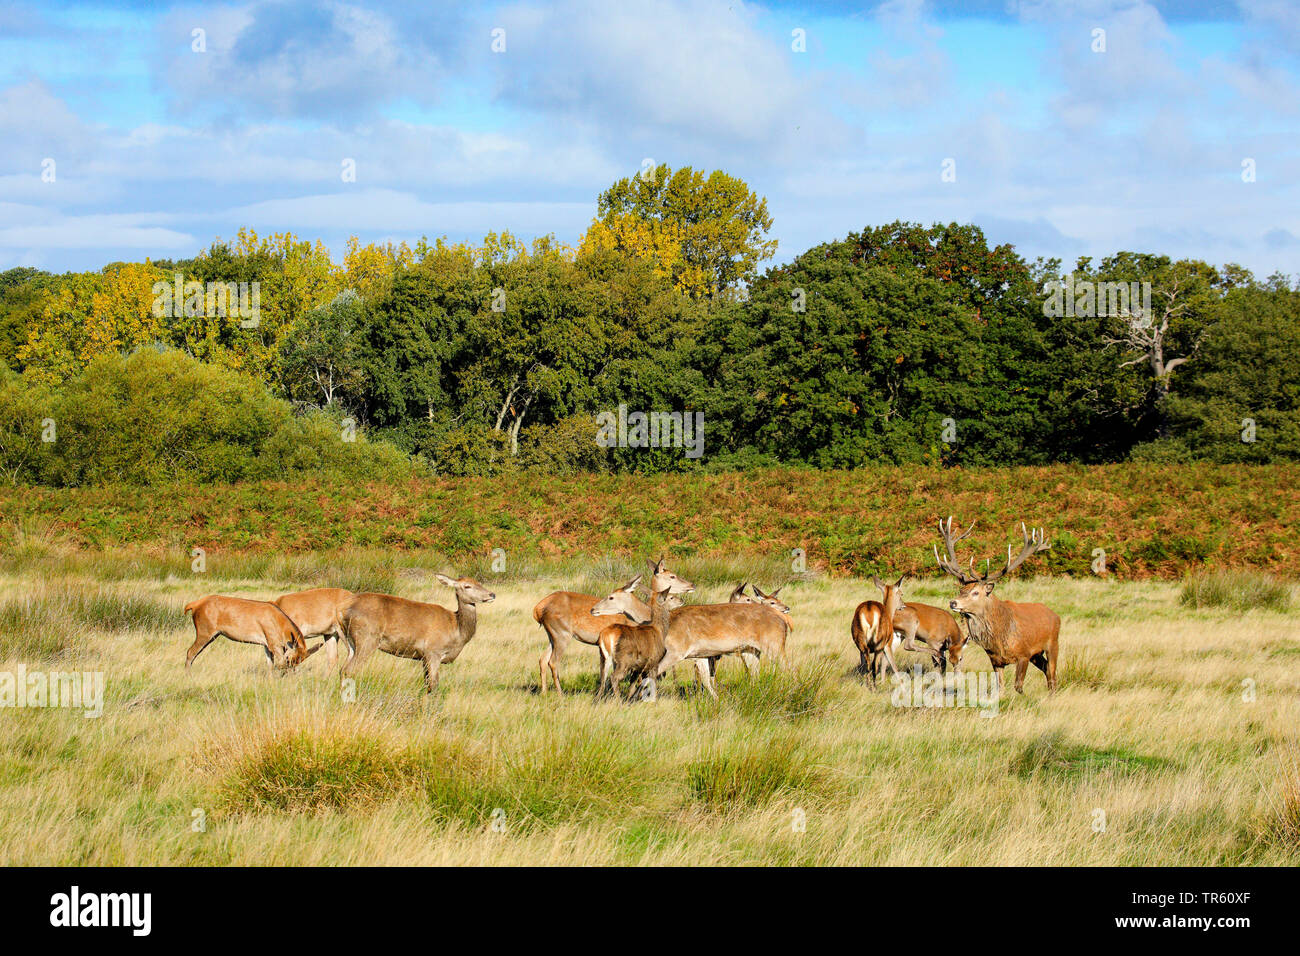 Red Deer (Cervus elaphus), hart debout avec hinds dans un pré, Suisse Banque D'Images